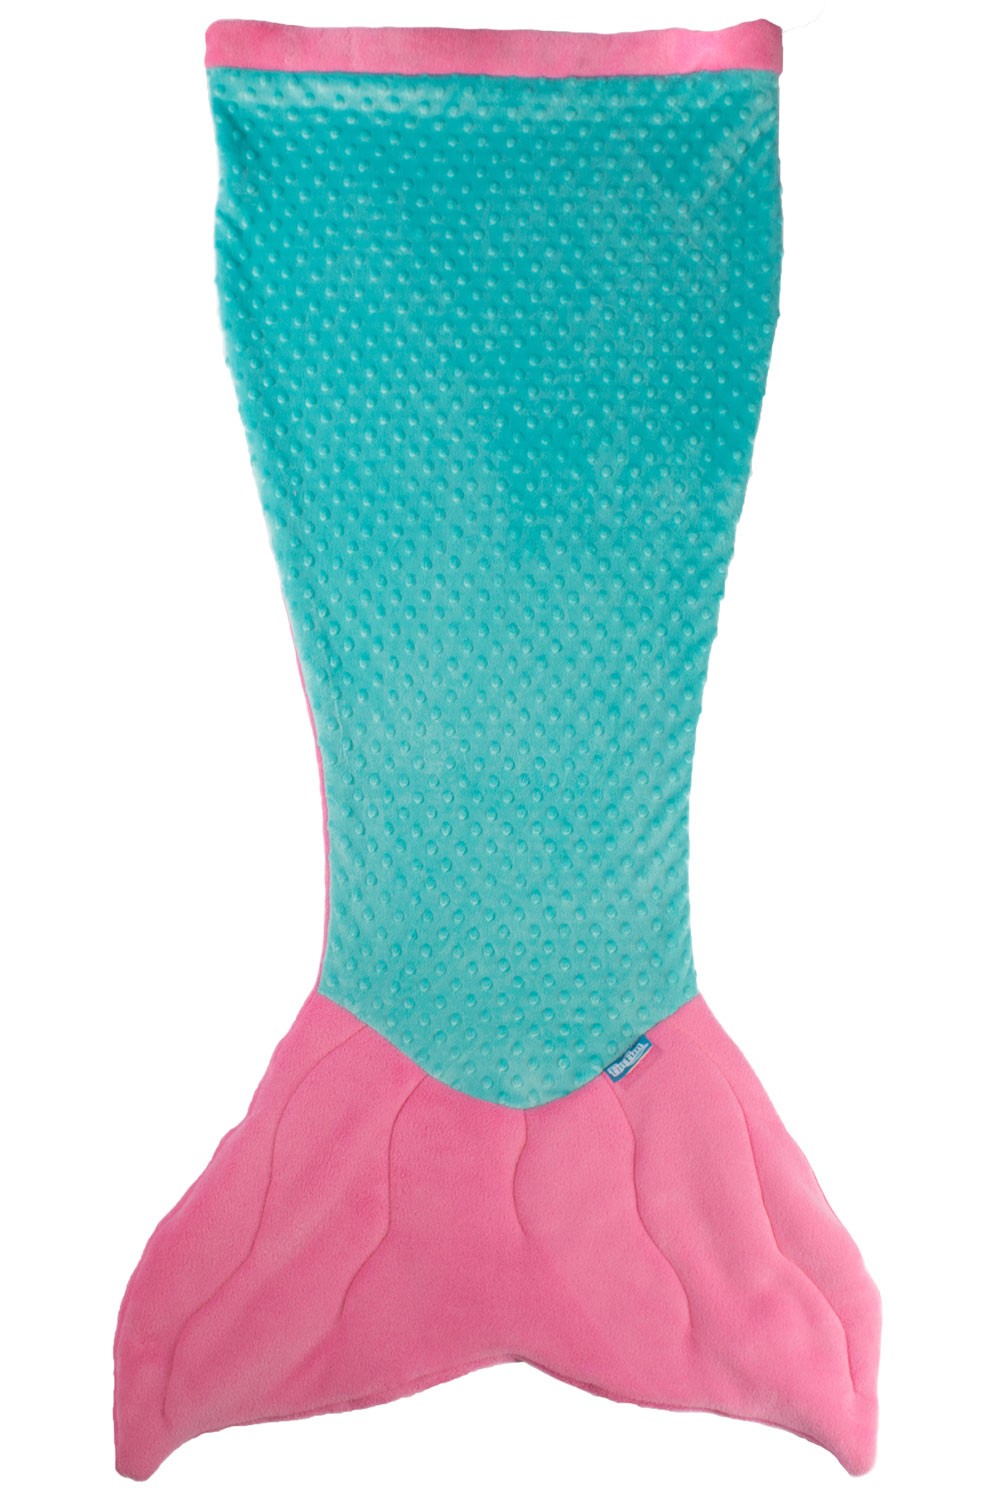 Mermaid Tail Blanket in Pink/Teal | FinFriends